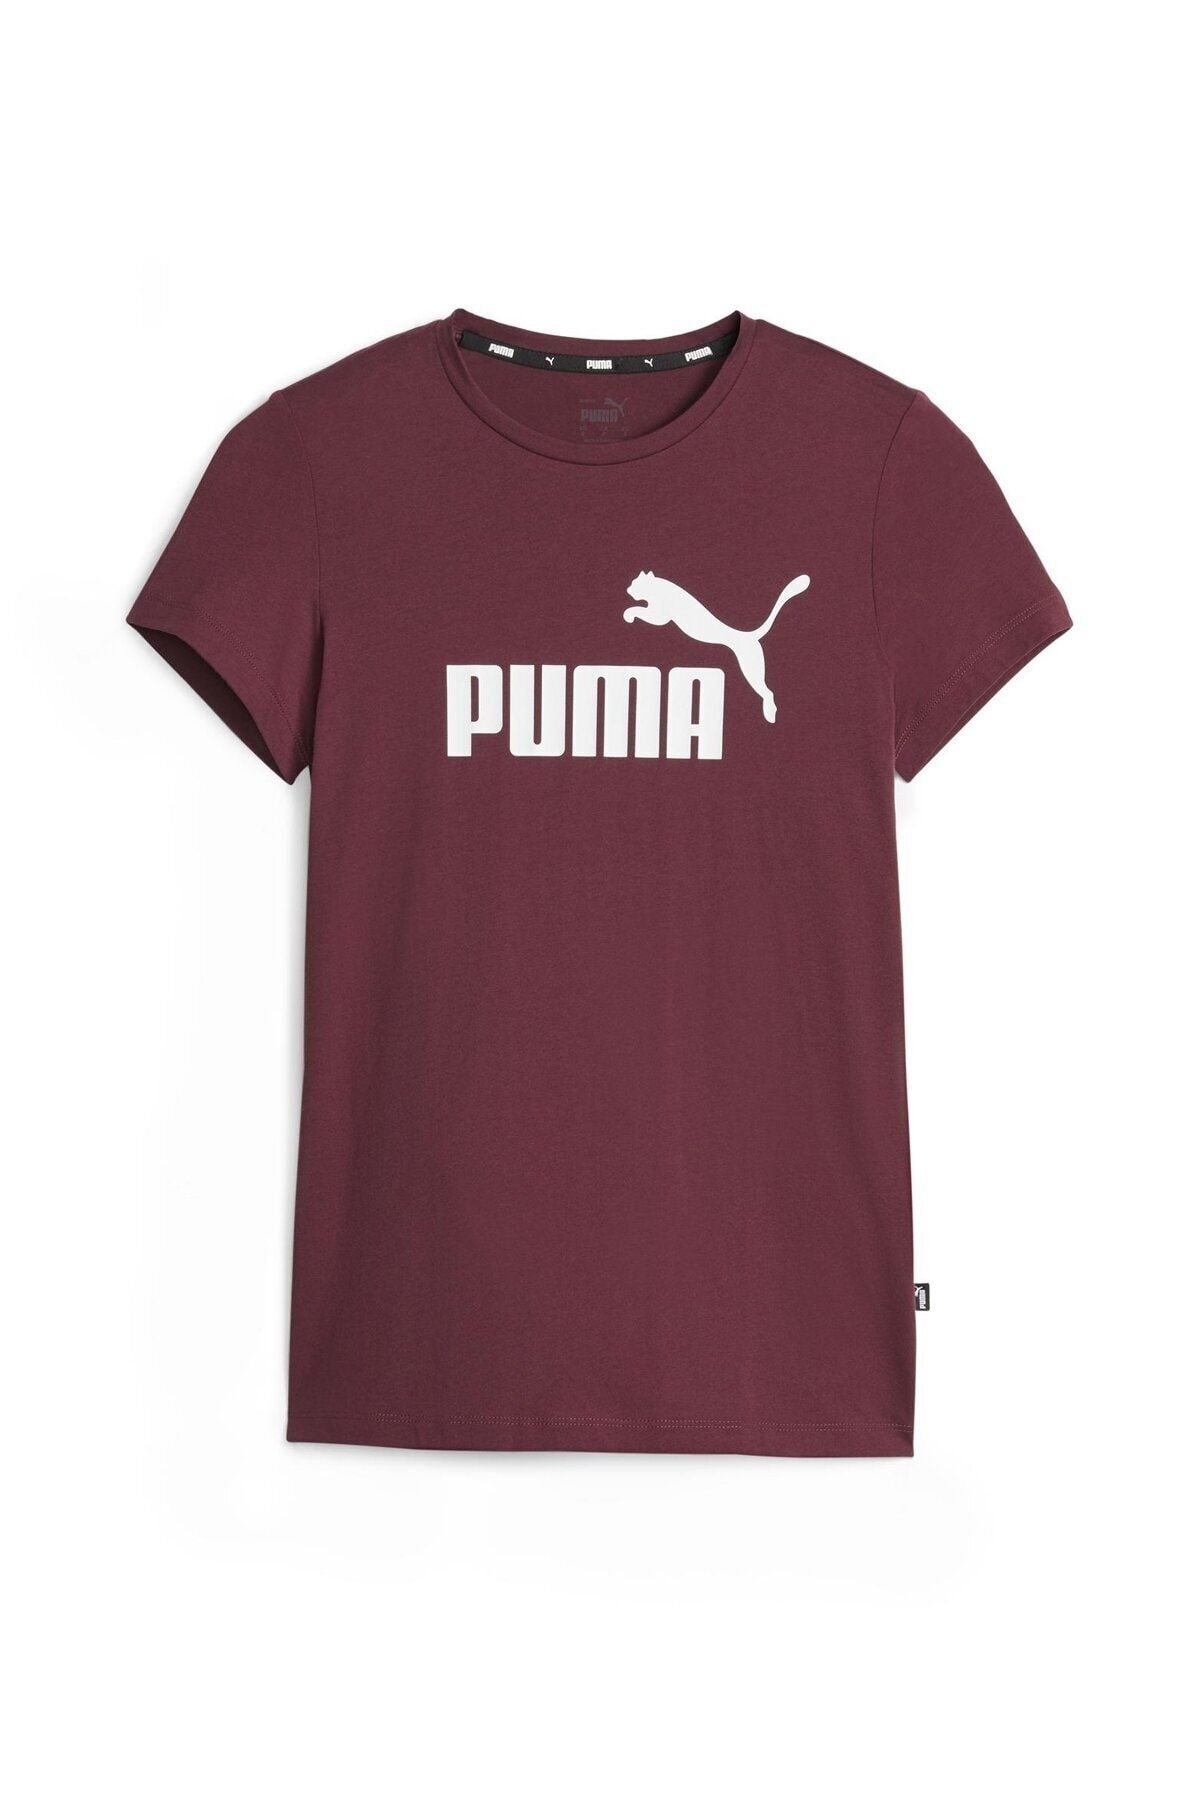 Puma ESS Logo Tee (s) Dark Jas Bordo Kadın Kısa Kol T-Shirt